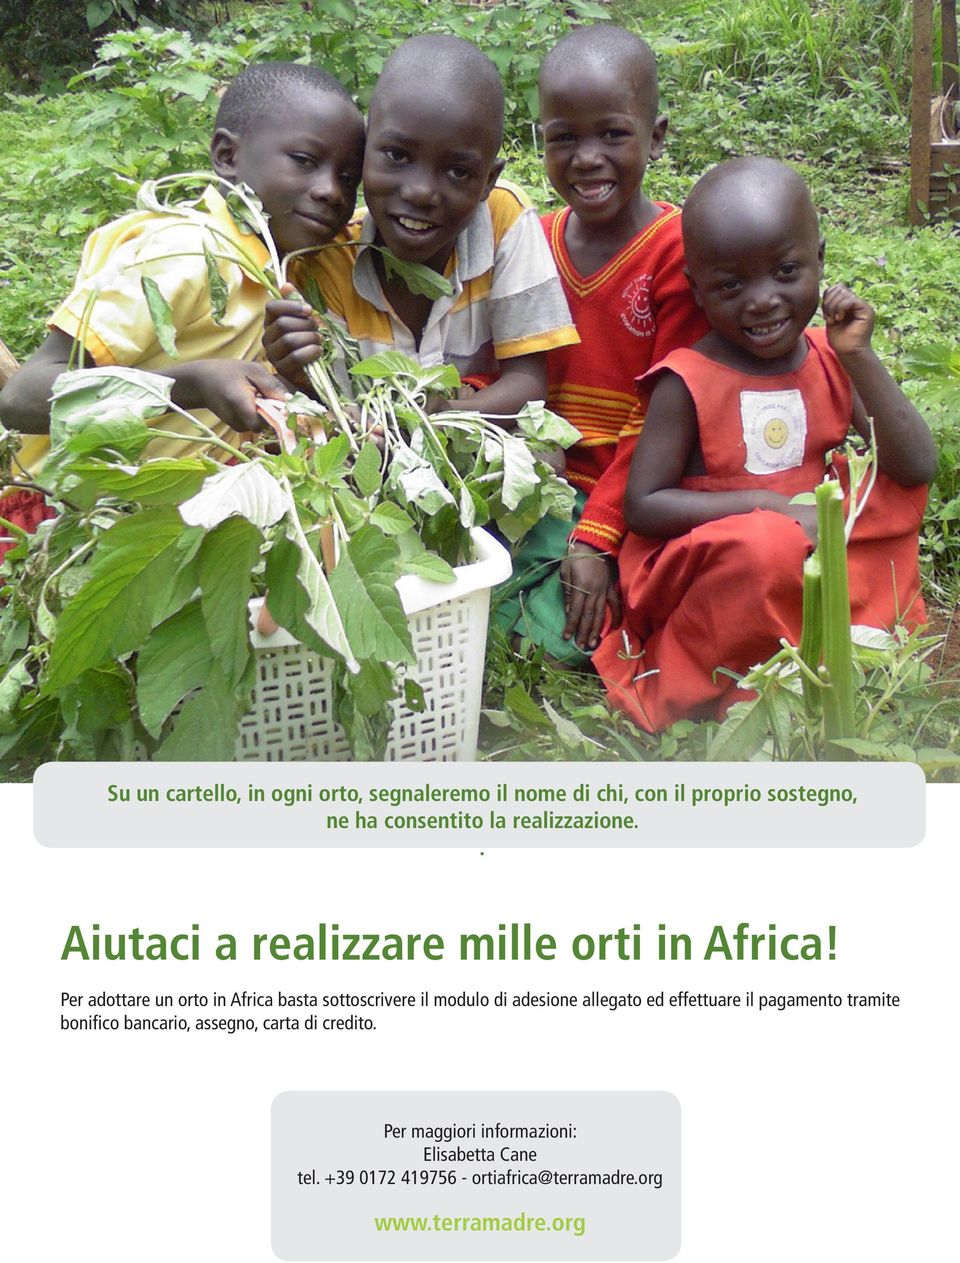 Per adottare un orto in Africa basta sottoscrivere il modulo di adesione allegato ed effettuare il pagamento